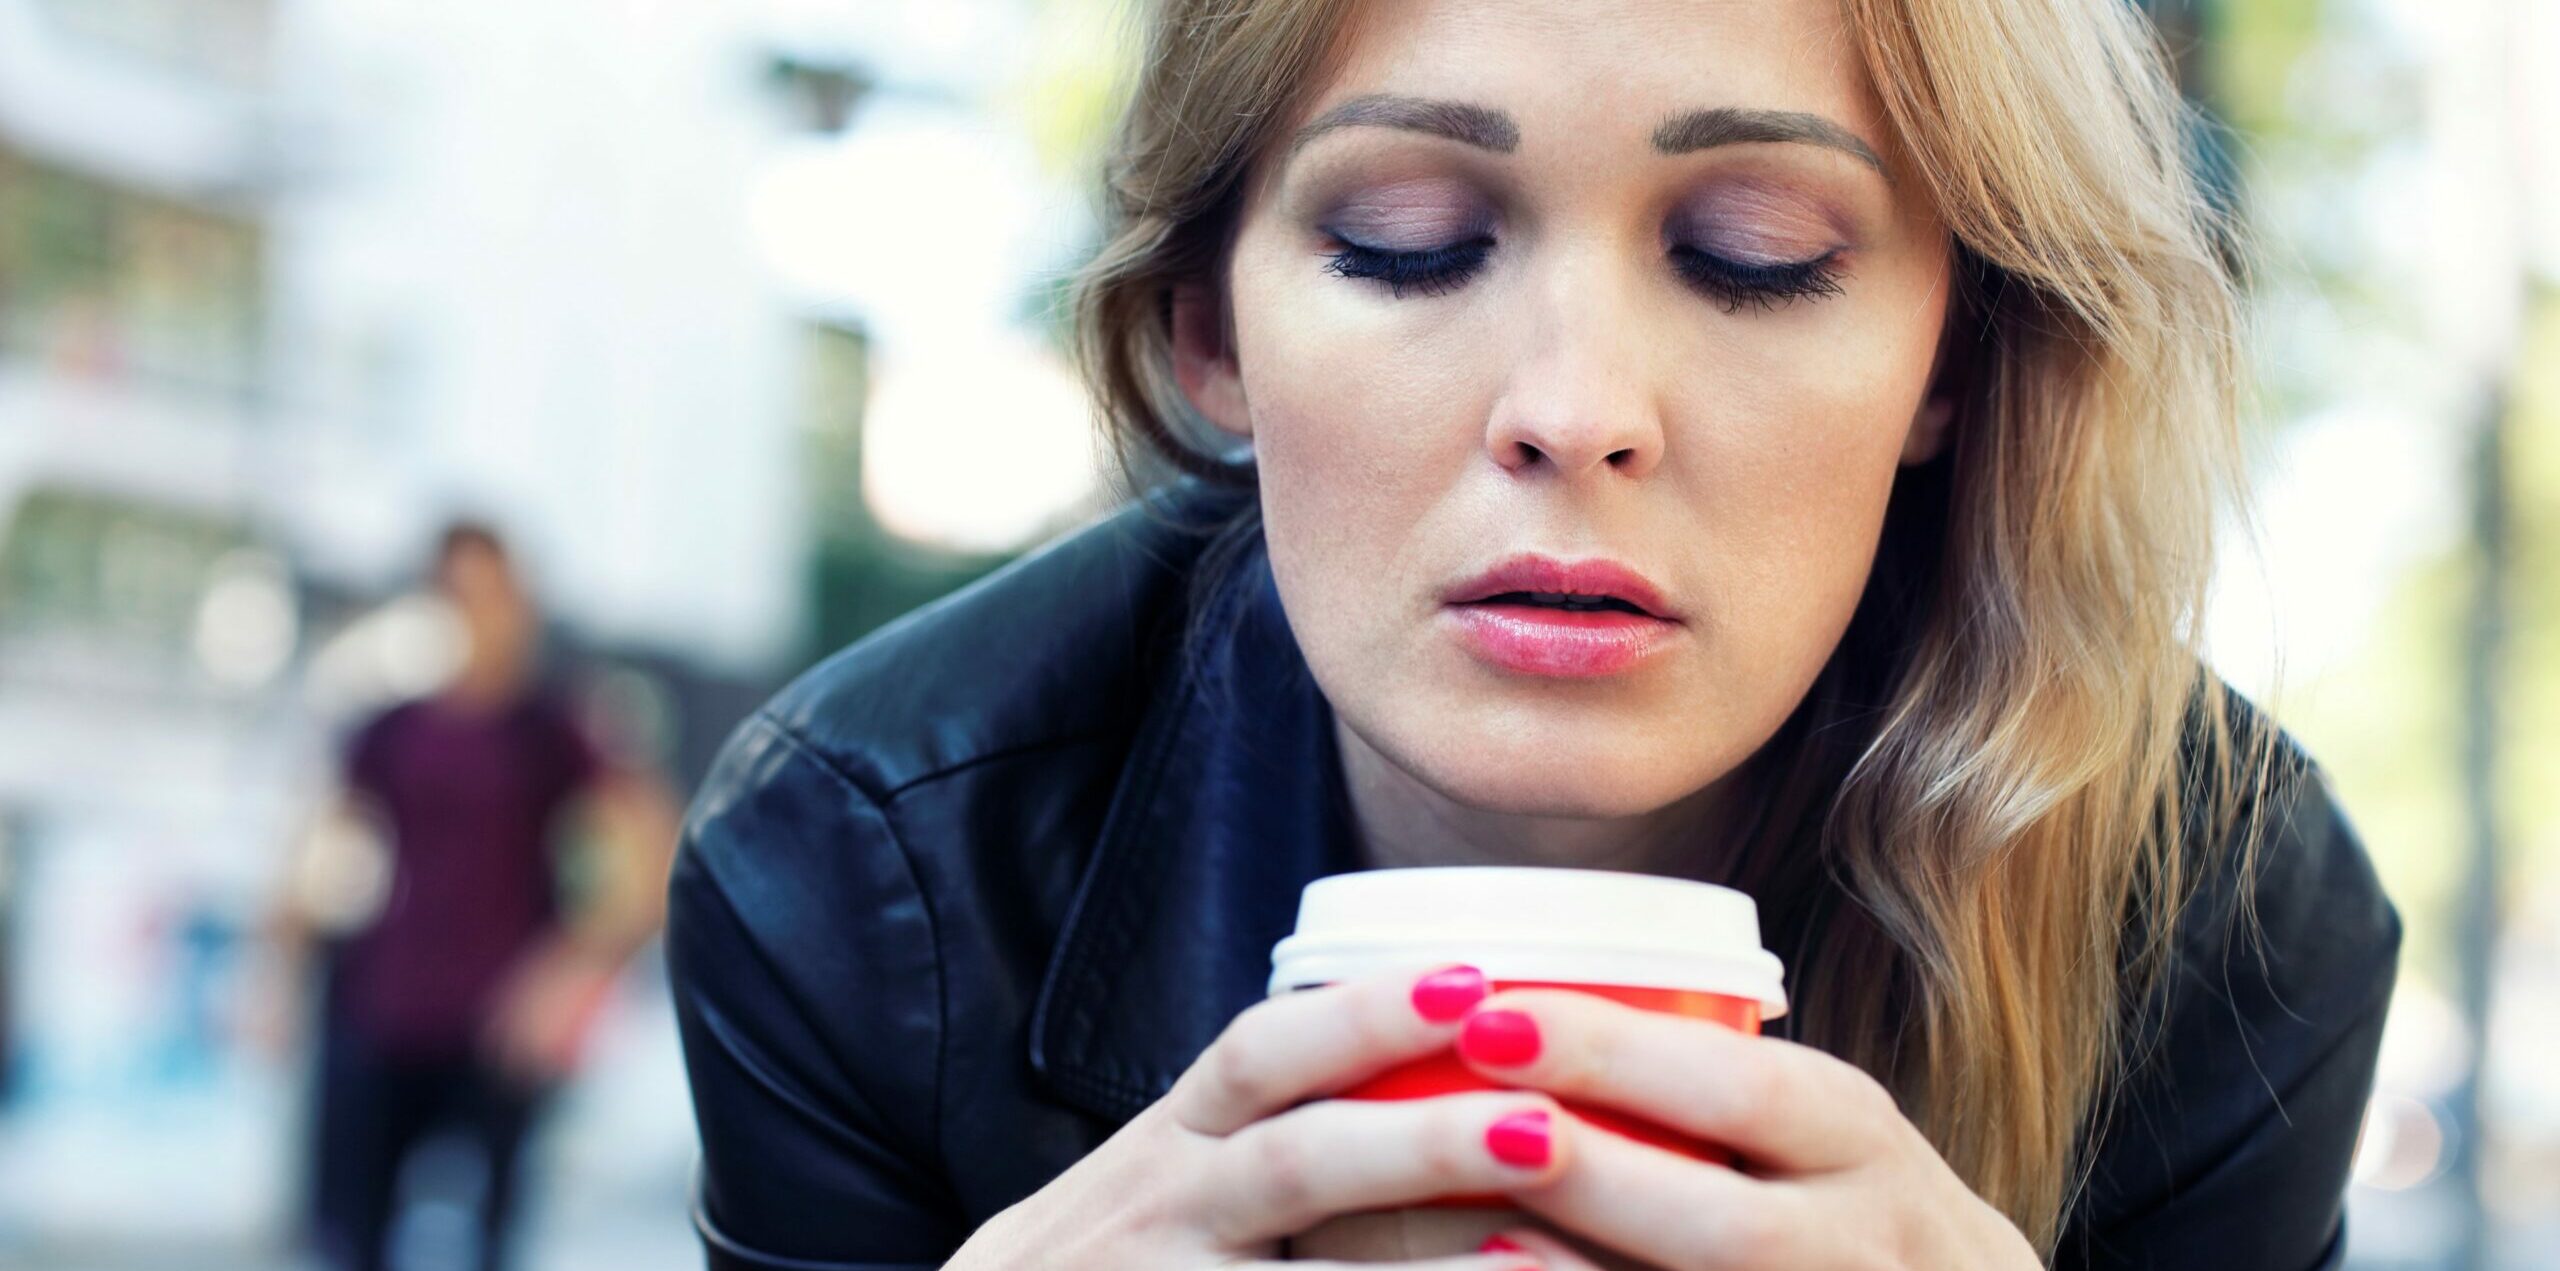 Eine junge Frau sitzt in der Fußgängerzone und schaut traurig auf ihren Coffee-to-go-Becher